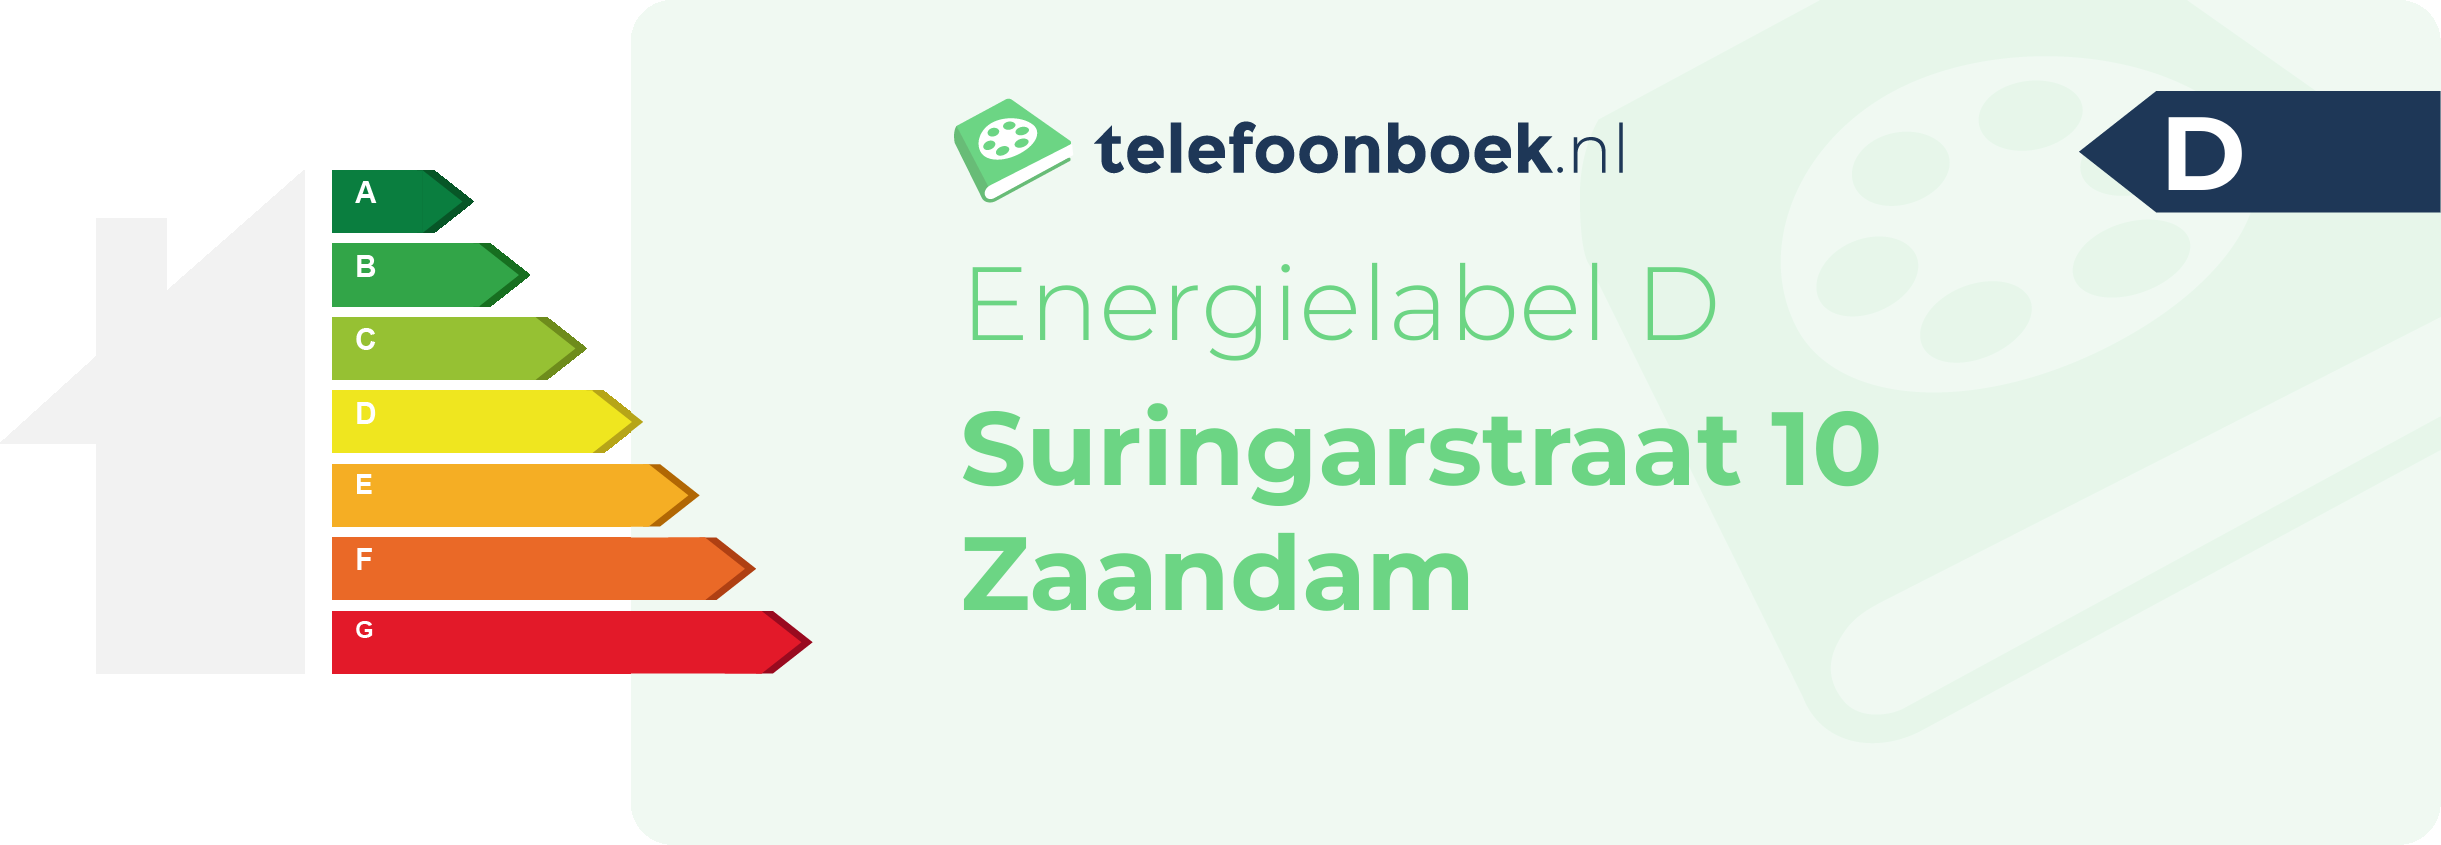 Energielabel Suringarstraat 10 Zaandam